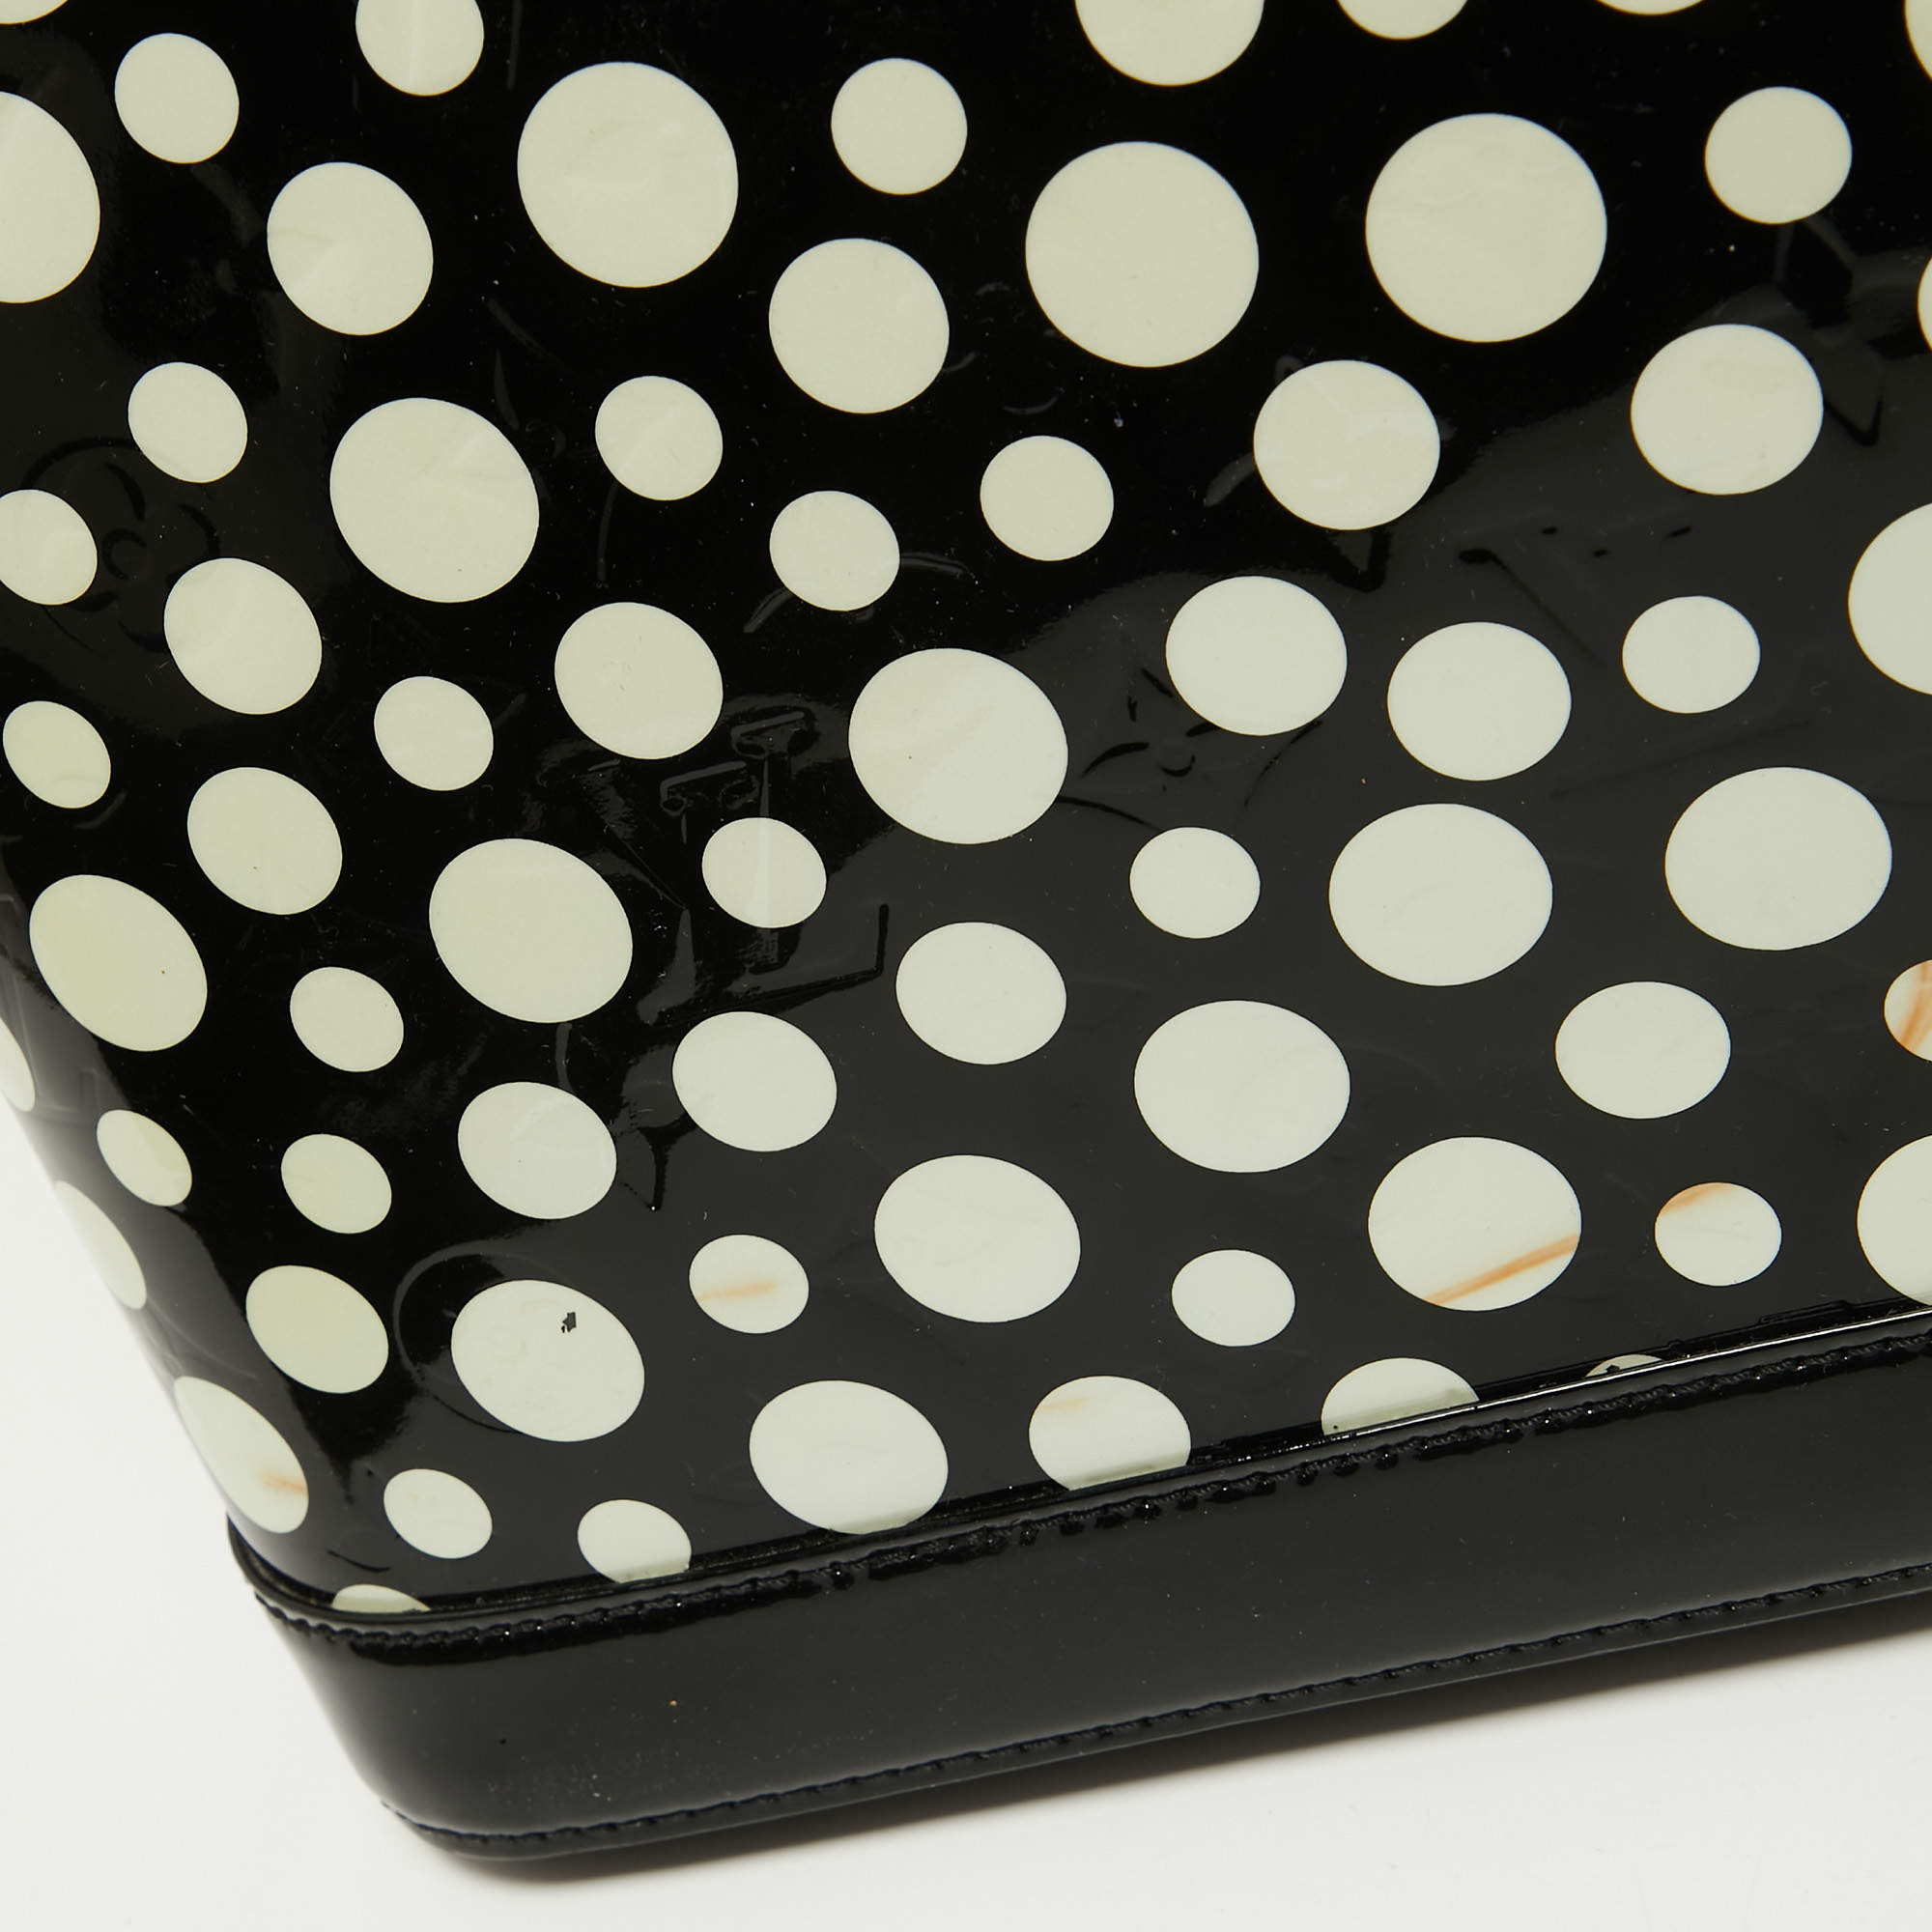 Authentic Louis Vuitton Yayoi Kusama Lock It MM Dots Inf. No Limited  Handbag